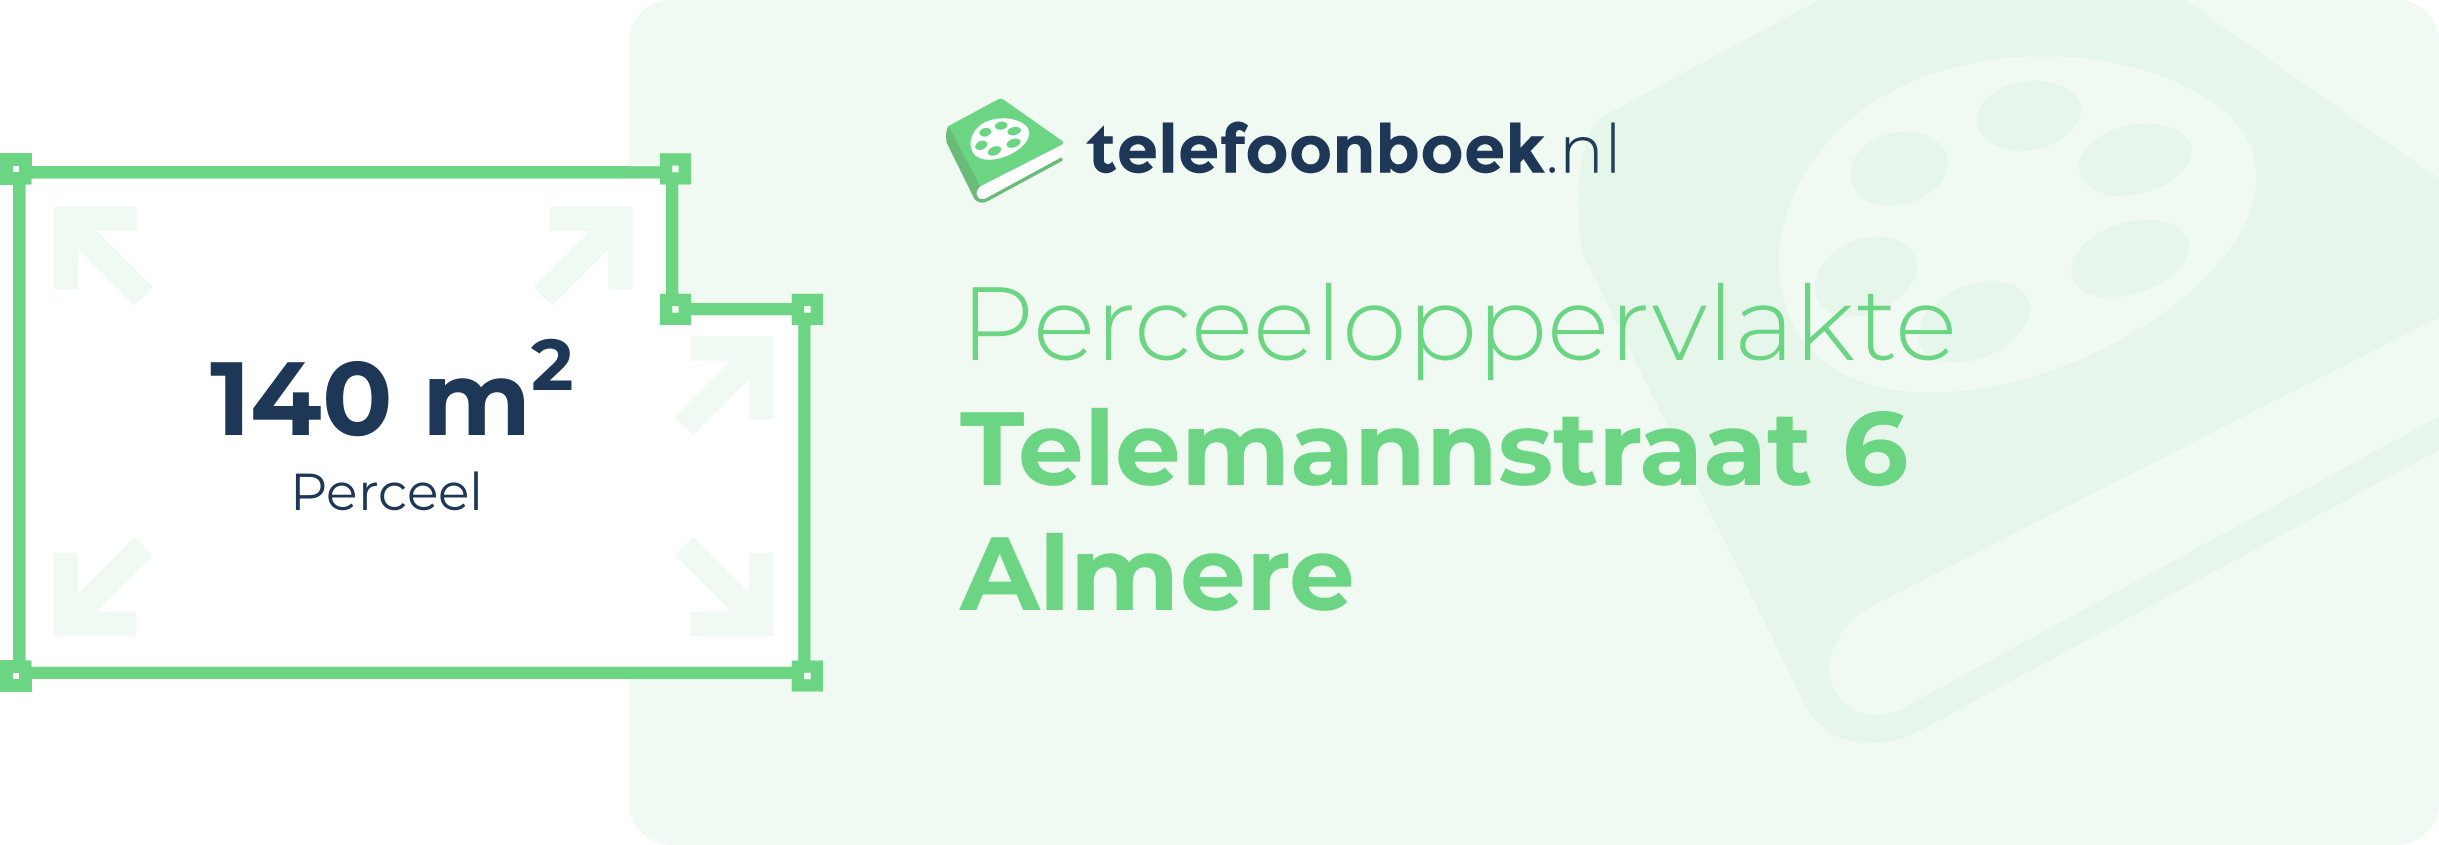 Perceeloppervlakte Telemannstraat 6 Almere